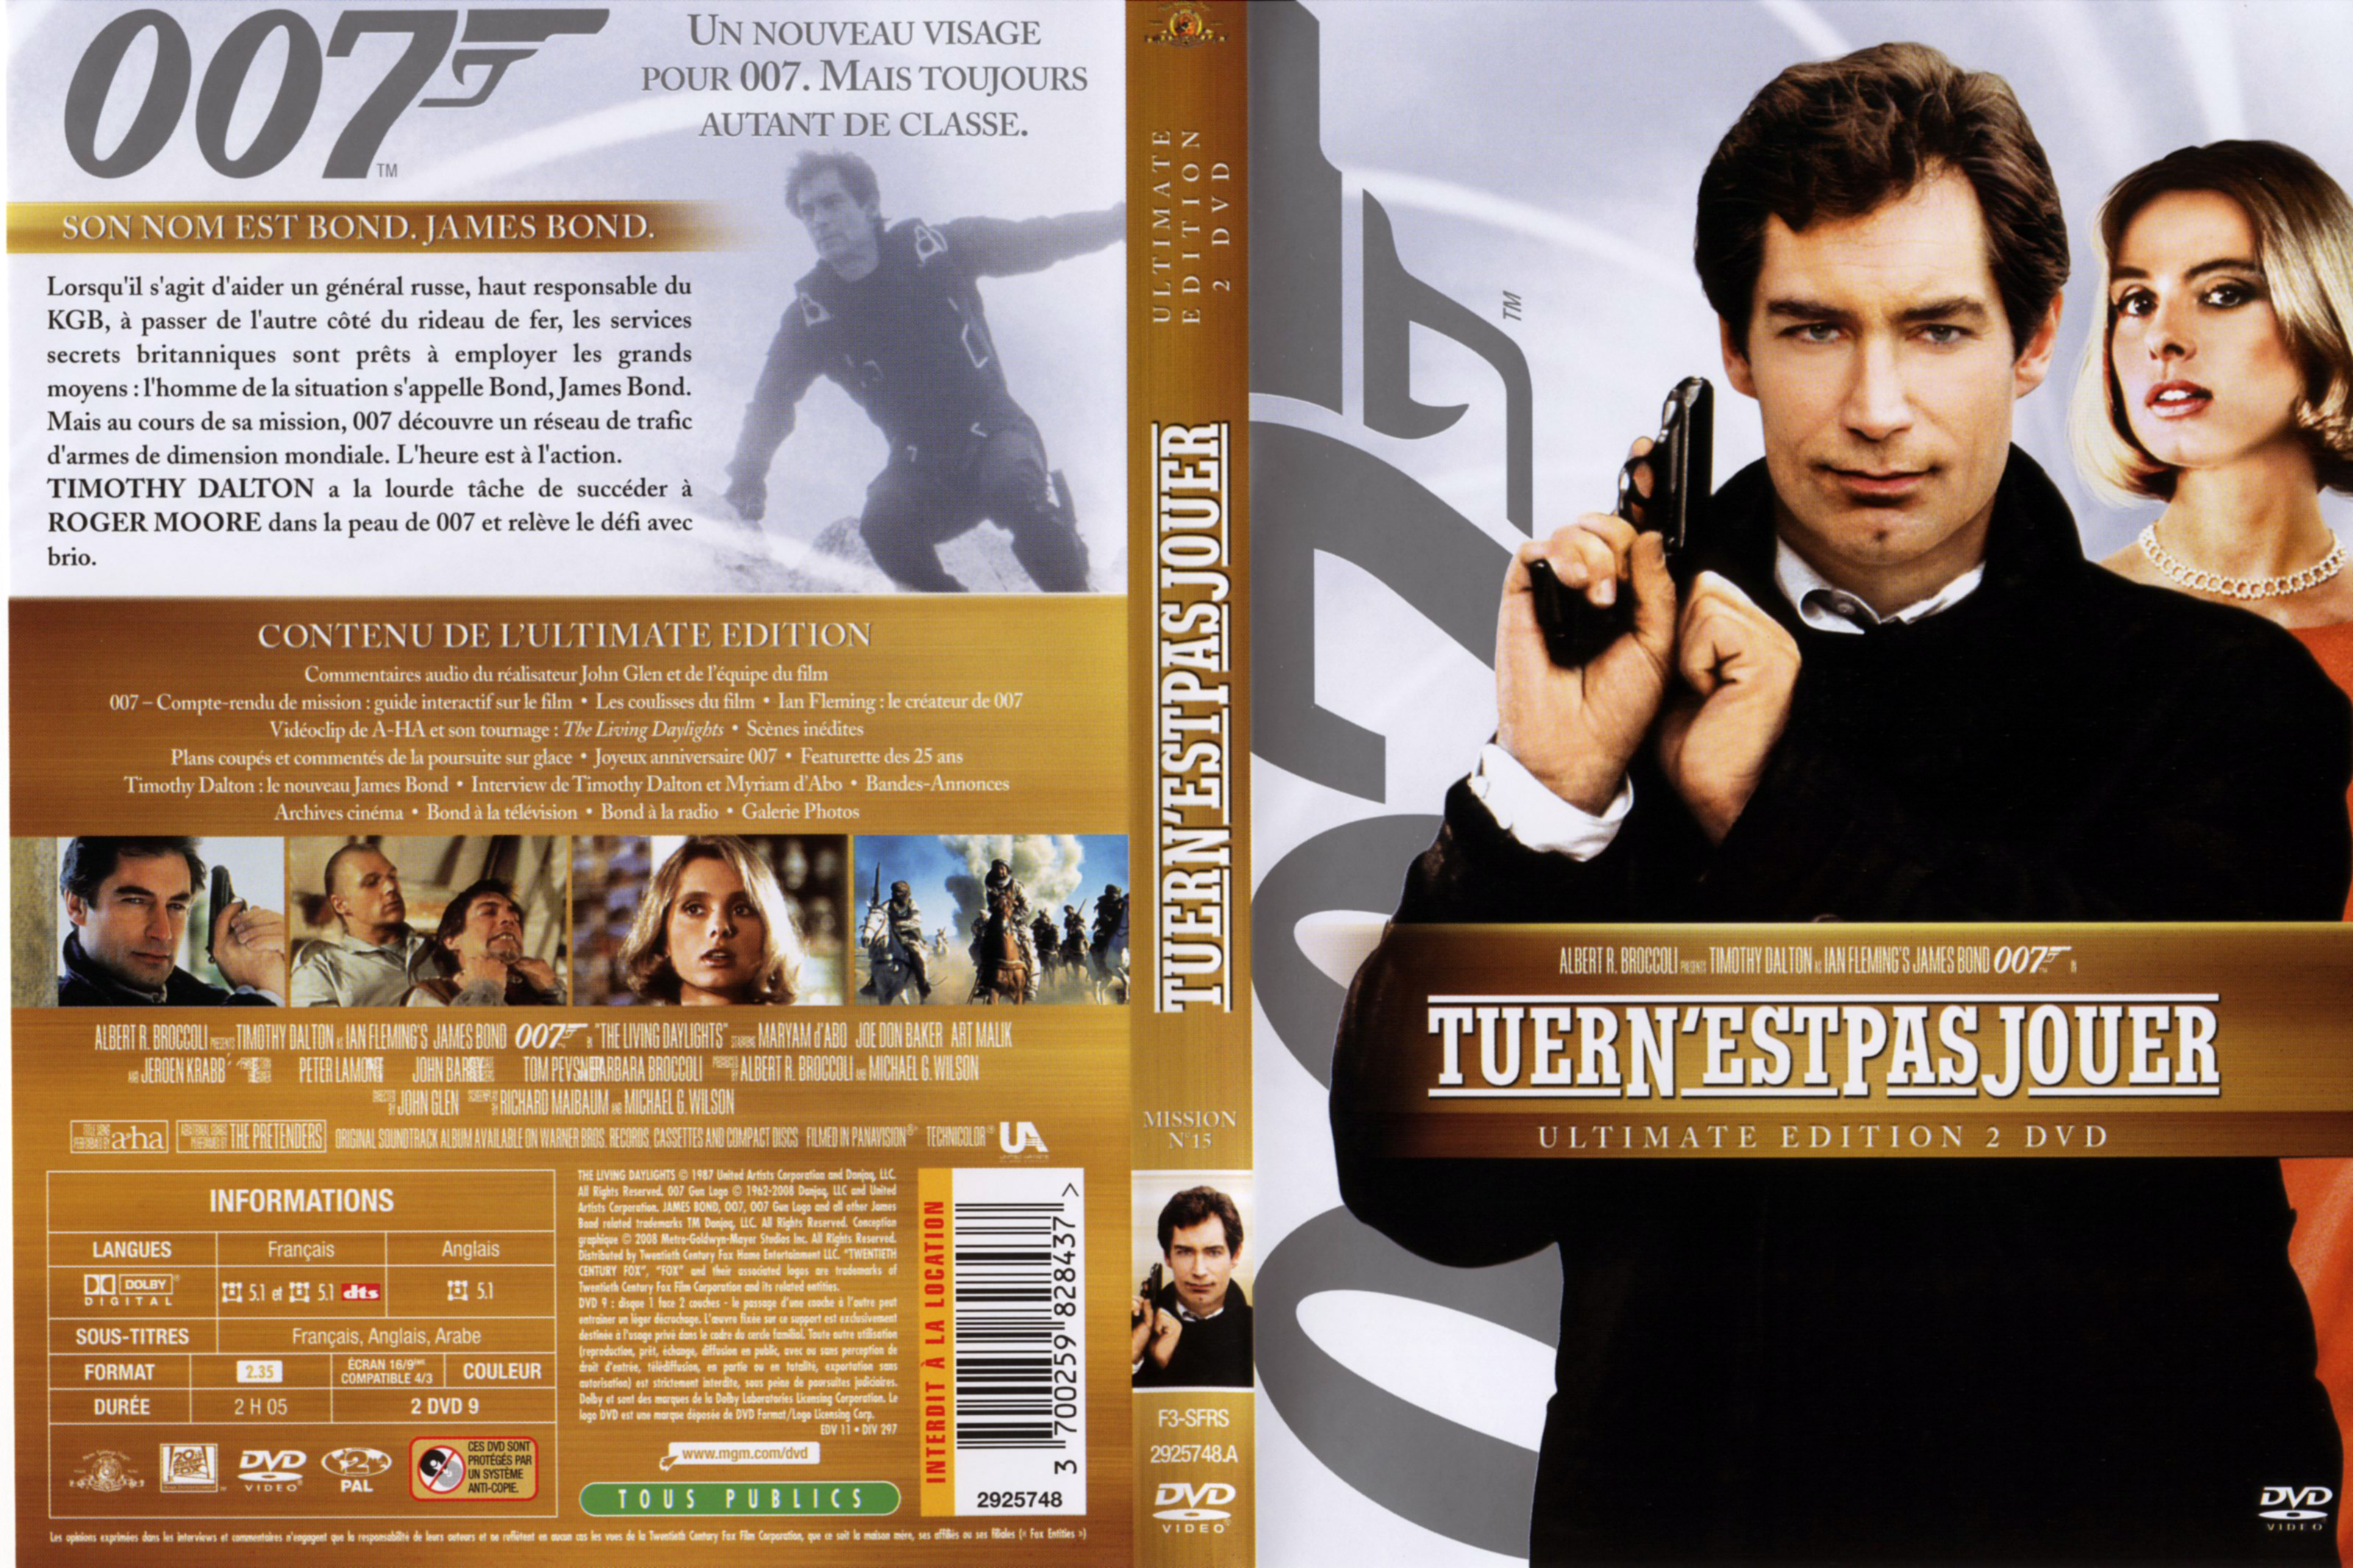 Jaquette DVD de James Bond 007 Tuer n'est pas jouer Ultimade Edition v2